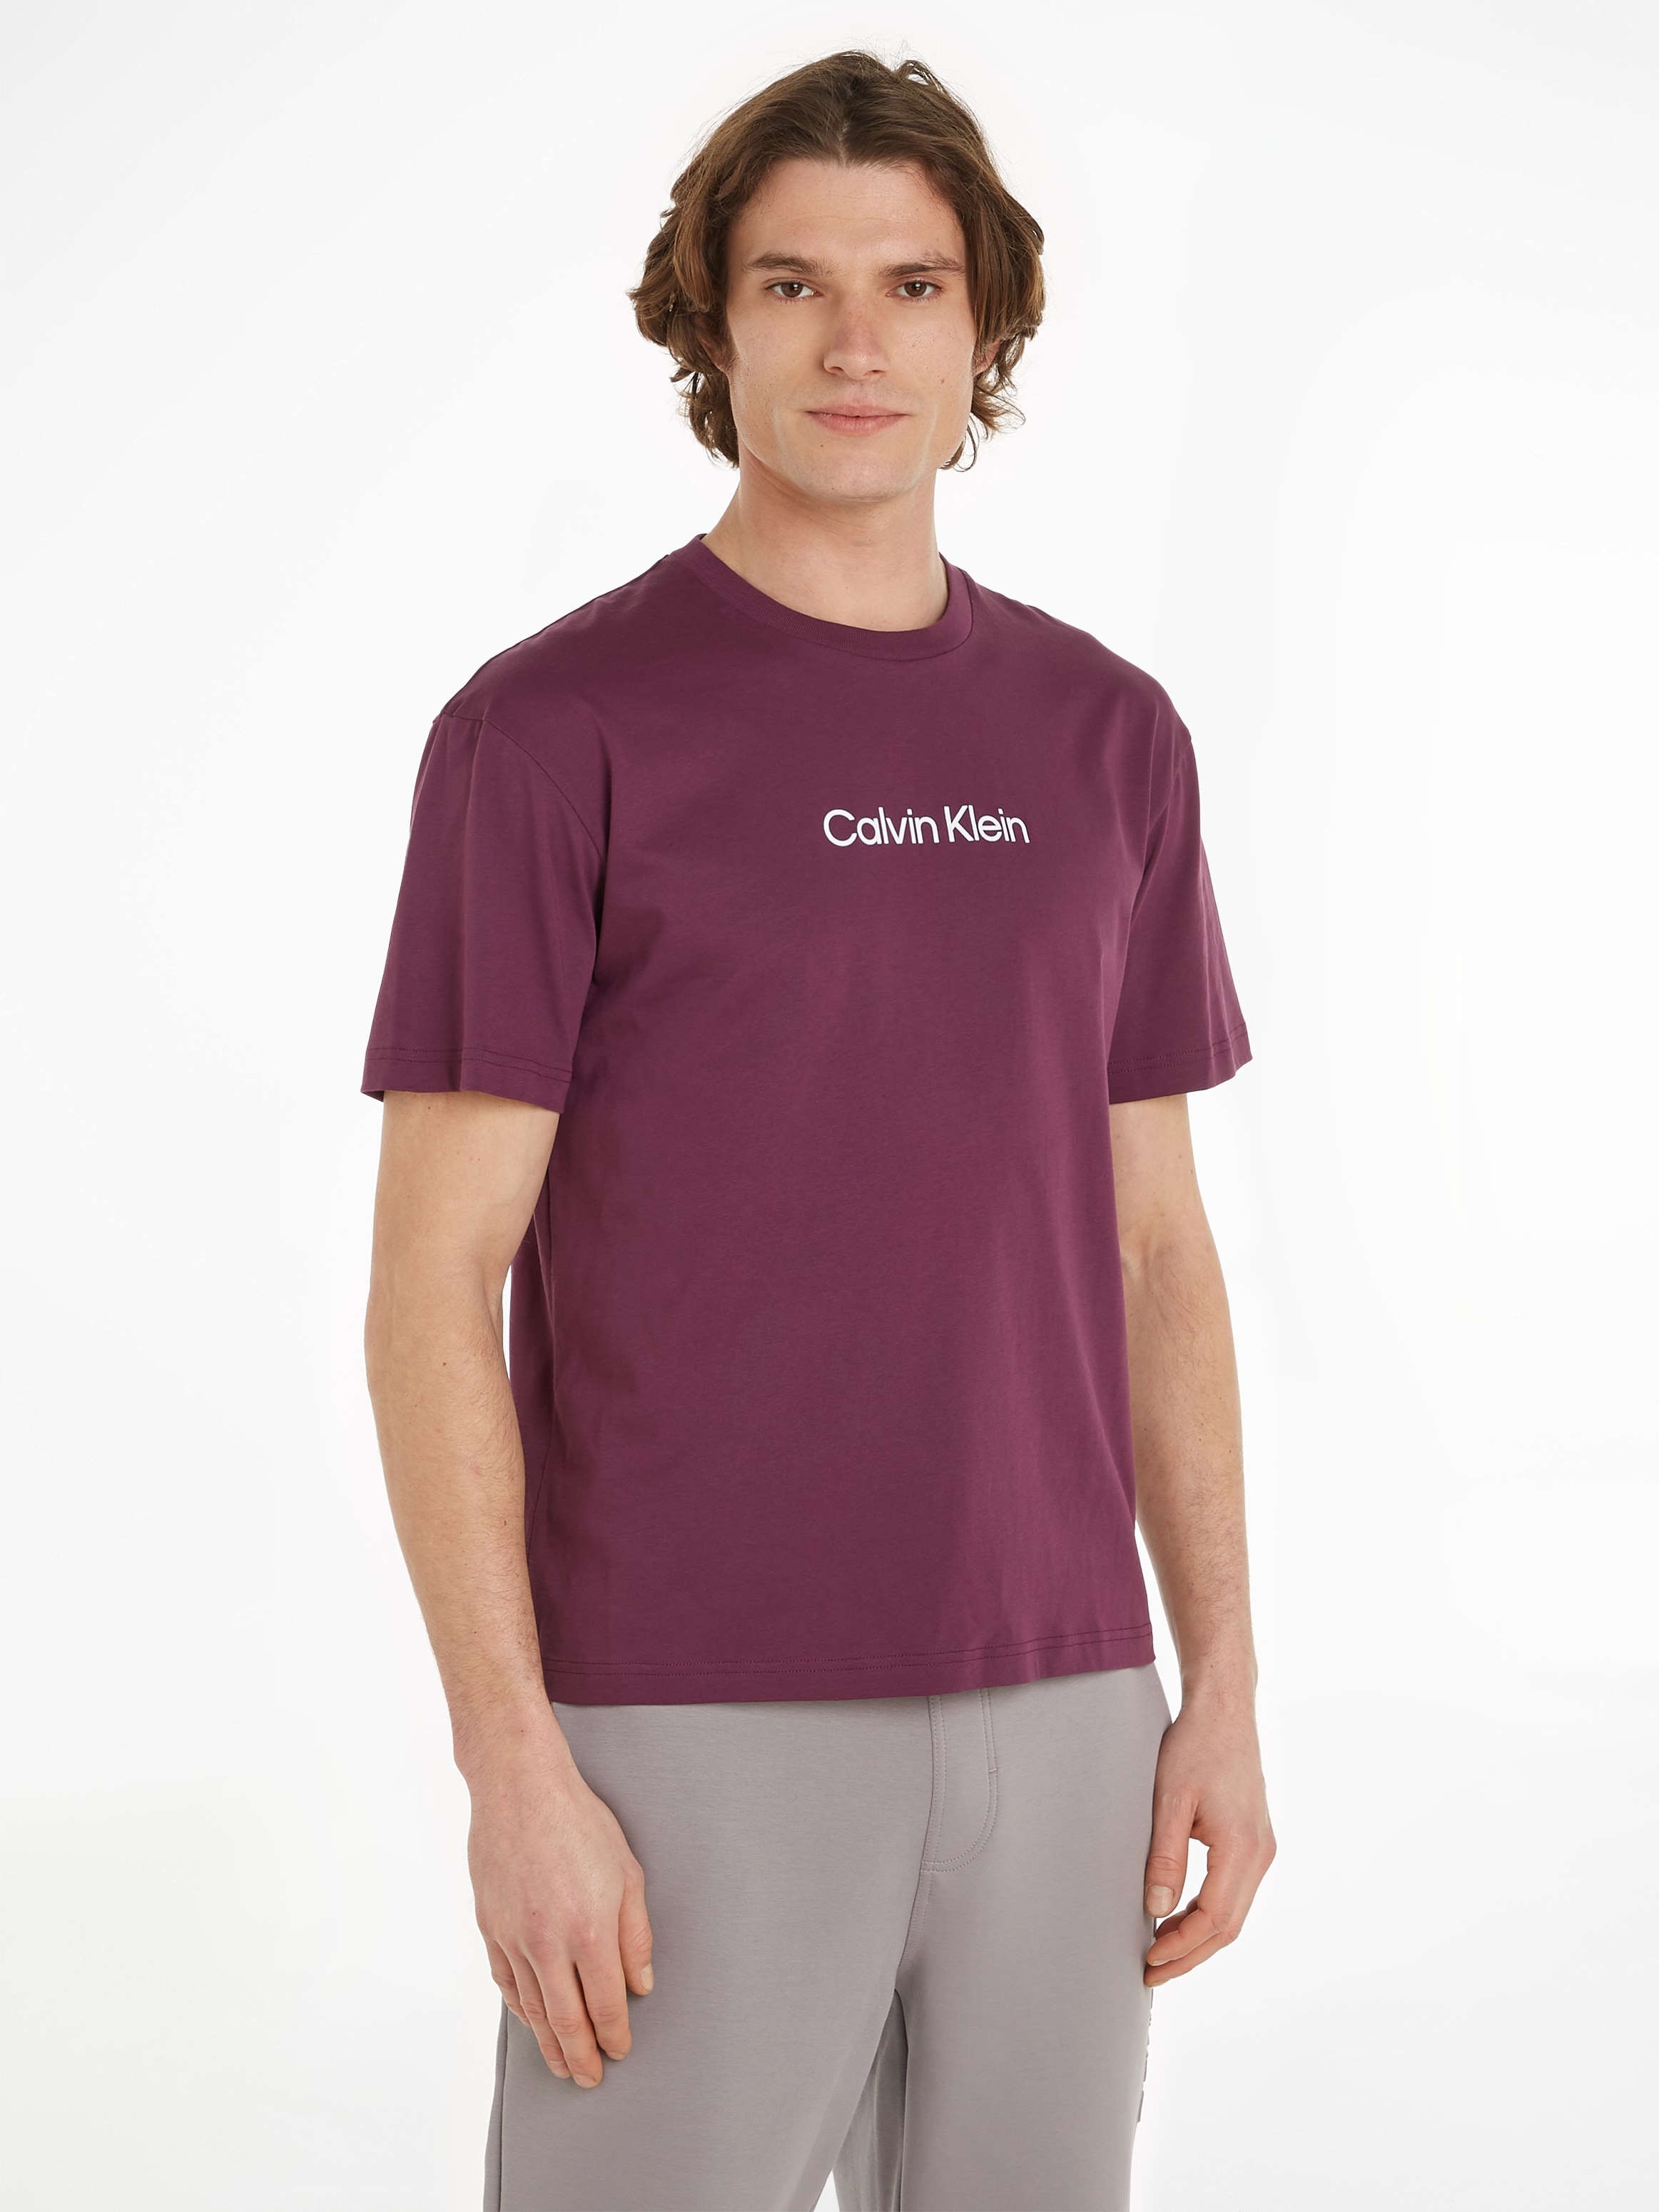 ♕ bei Markenlabel COMFORT LOGO Calvin »HERO aufgedrucktem mit T-Shirt T-SHIRT«, Klein